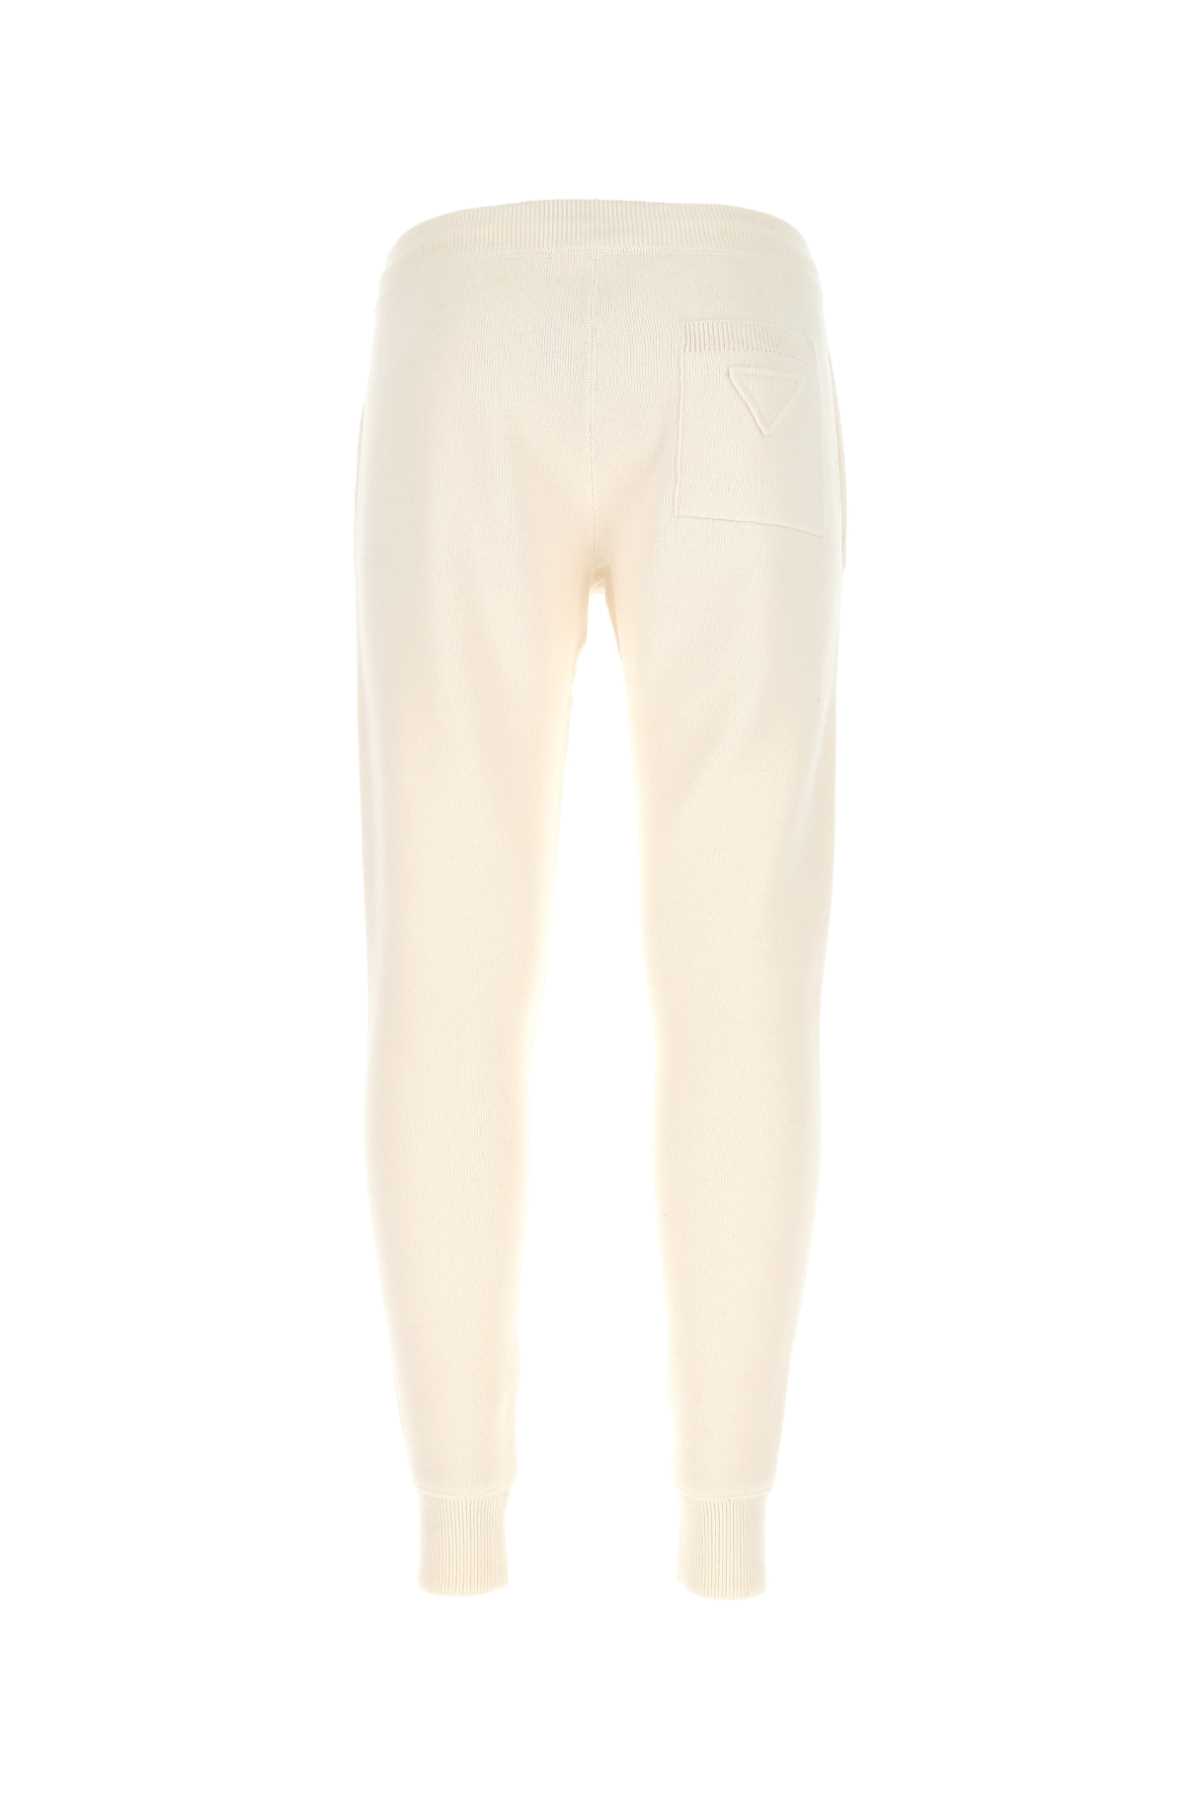 Prada Ivory Stretch Cashmere Blend Joggers In Bianco